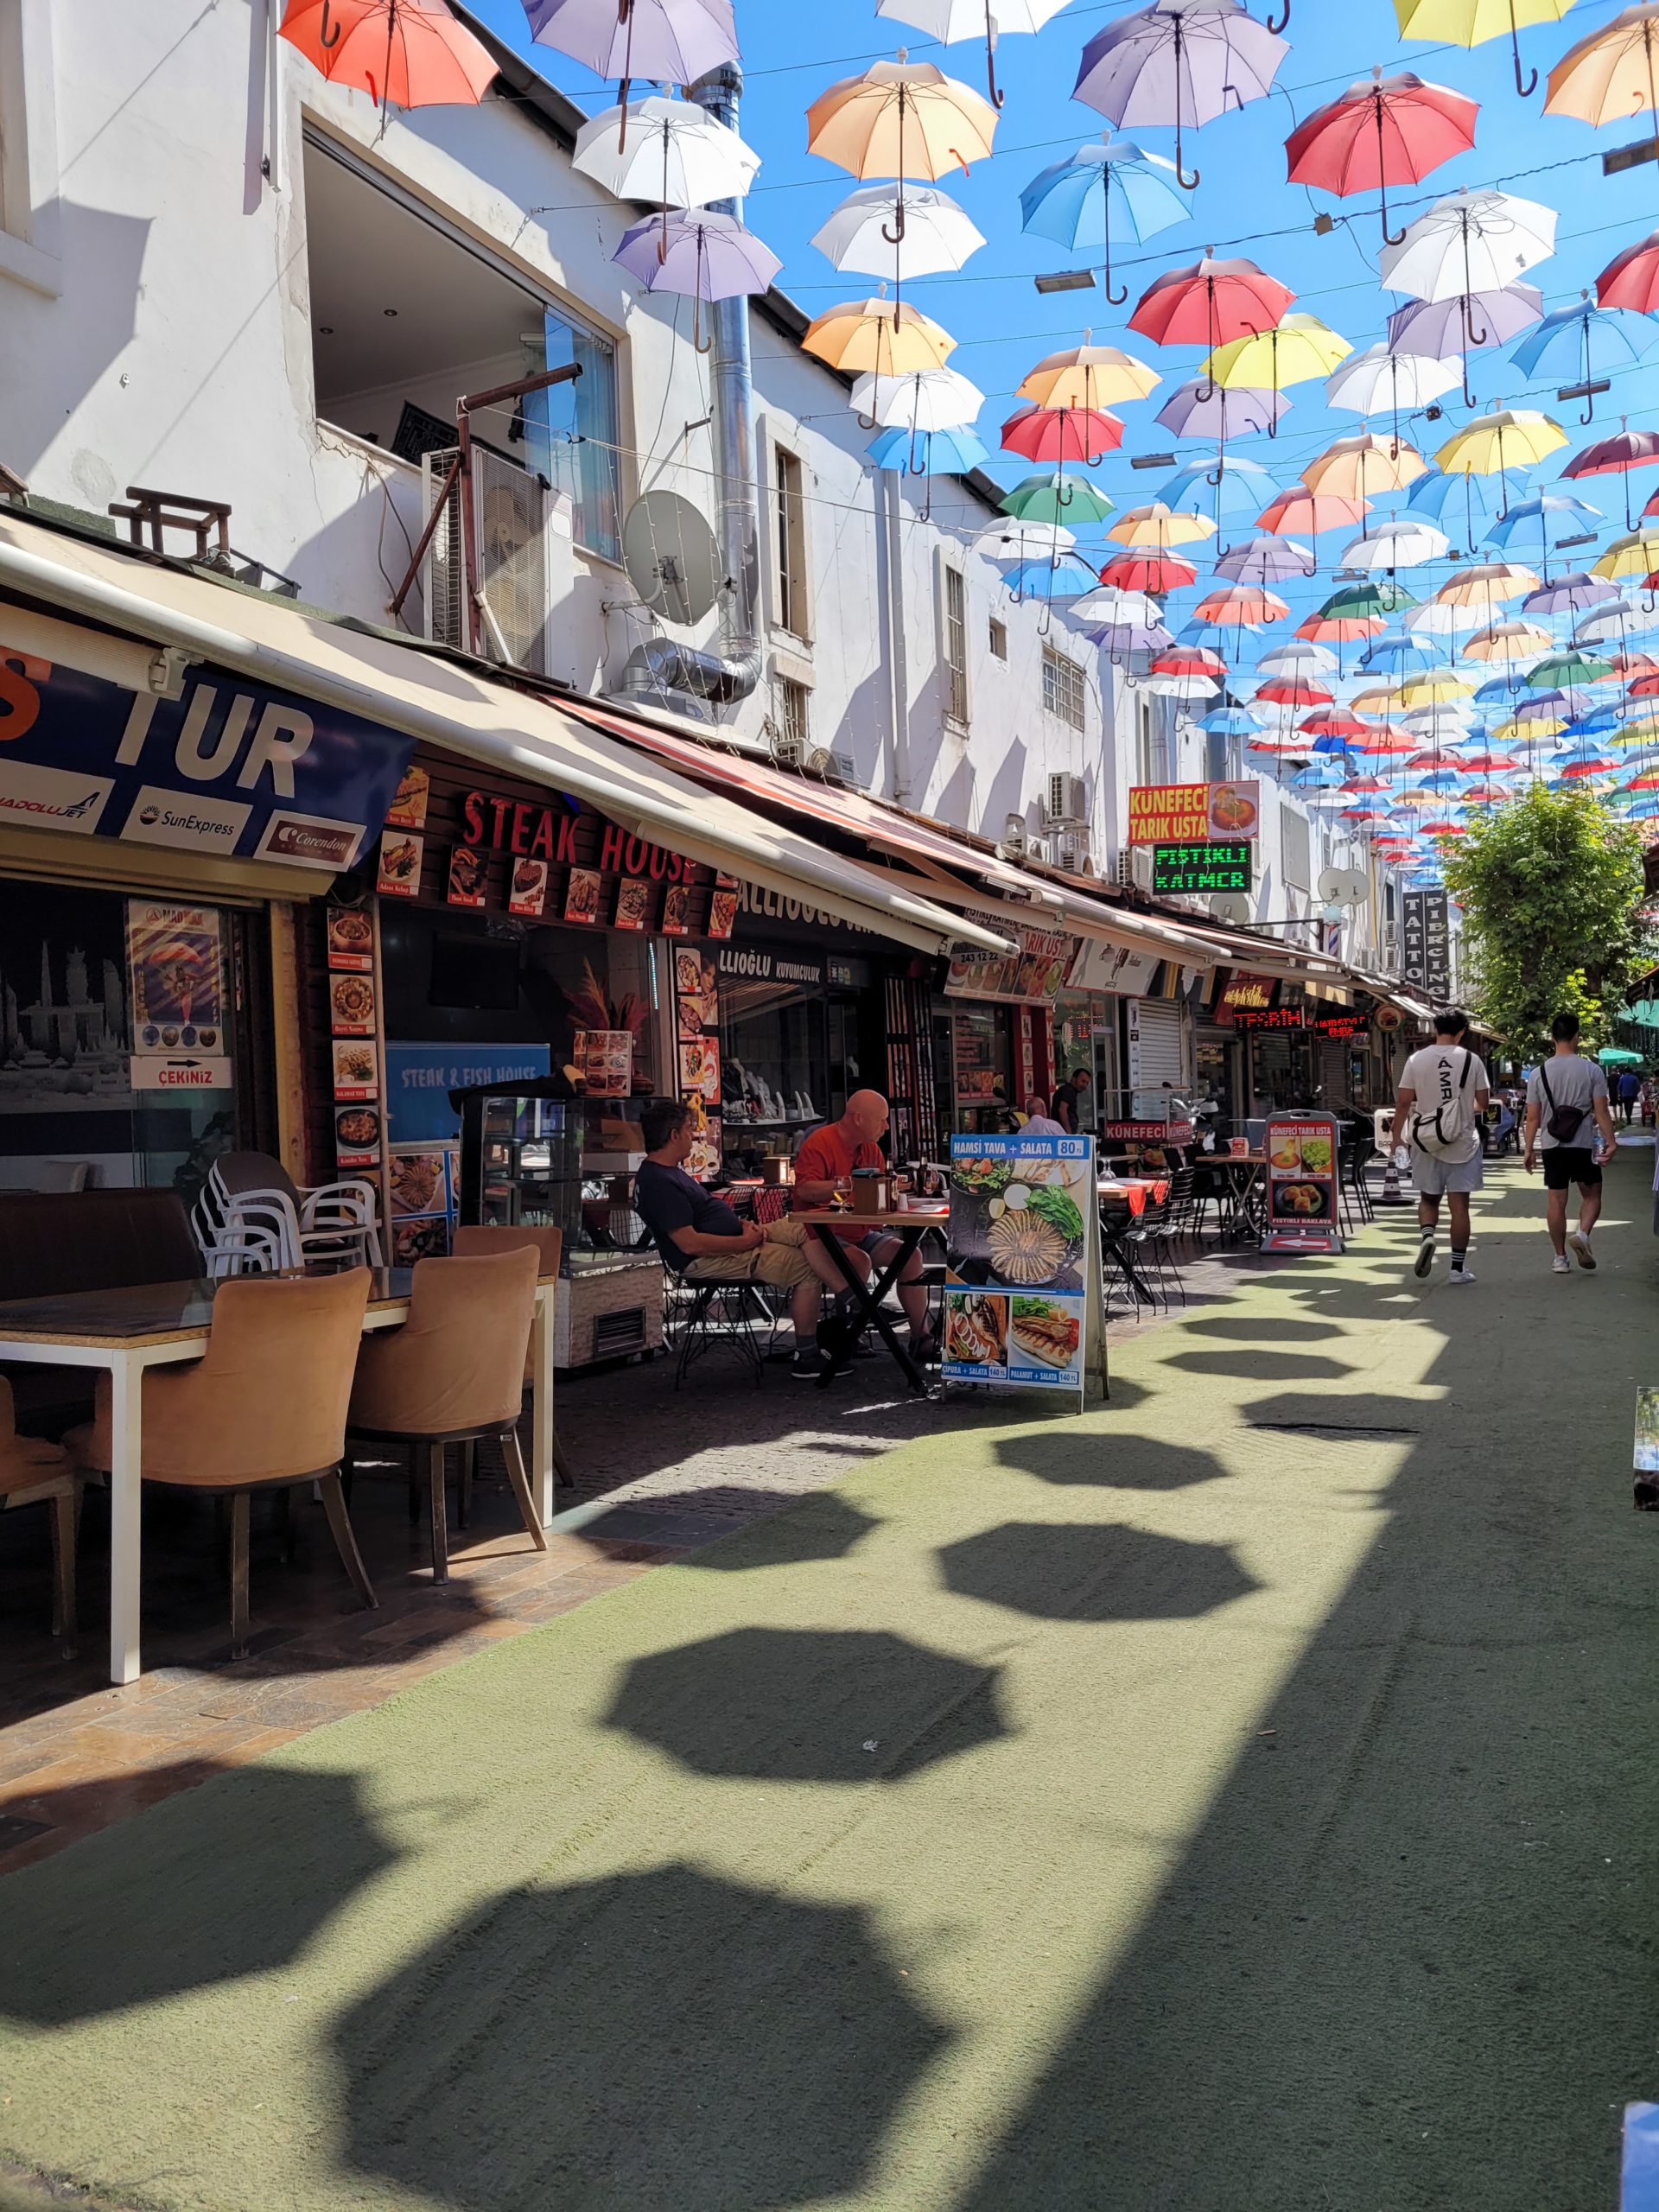 Antalya Street of umbrellas